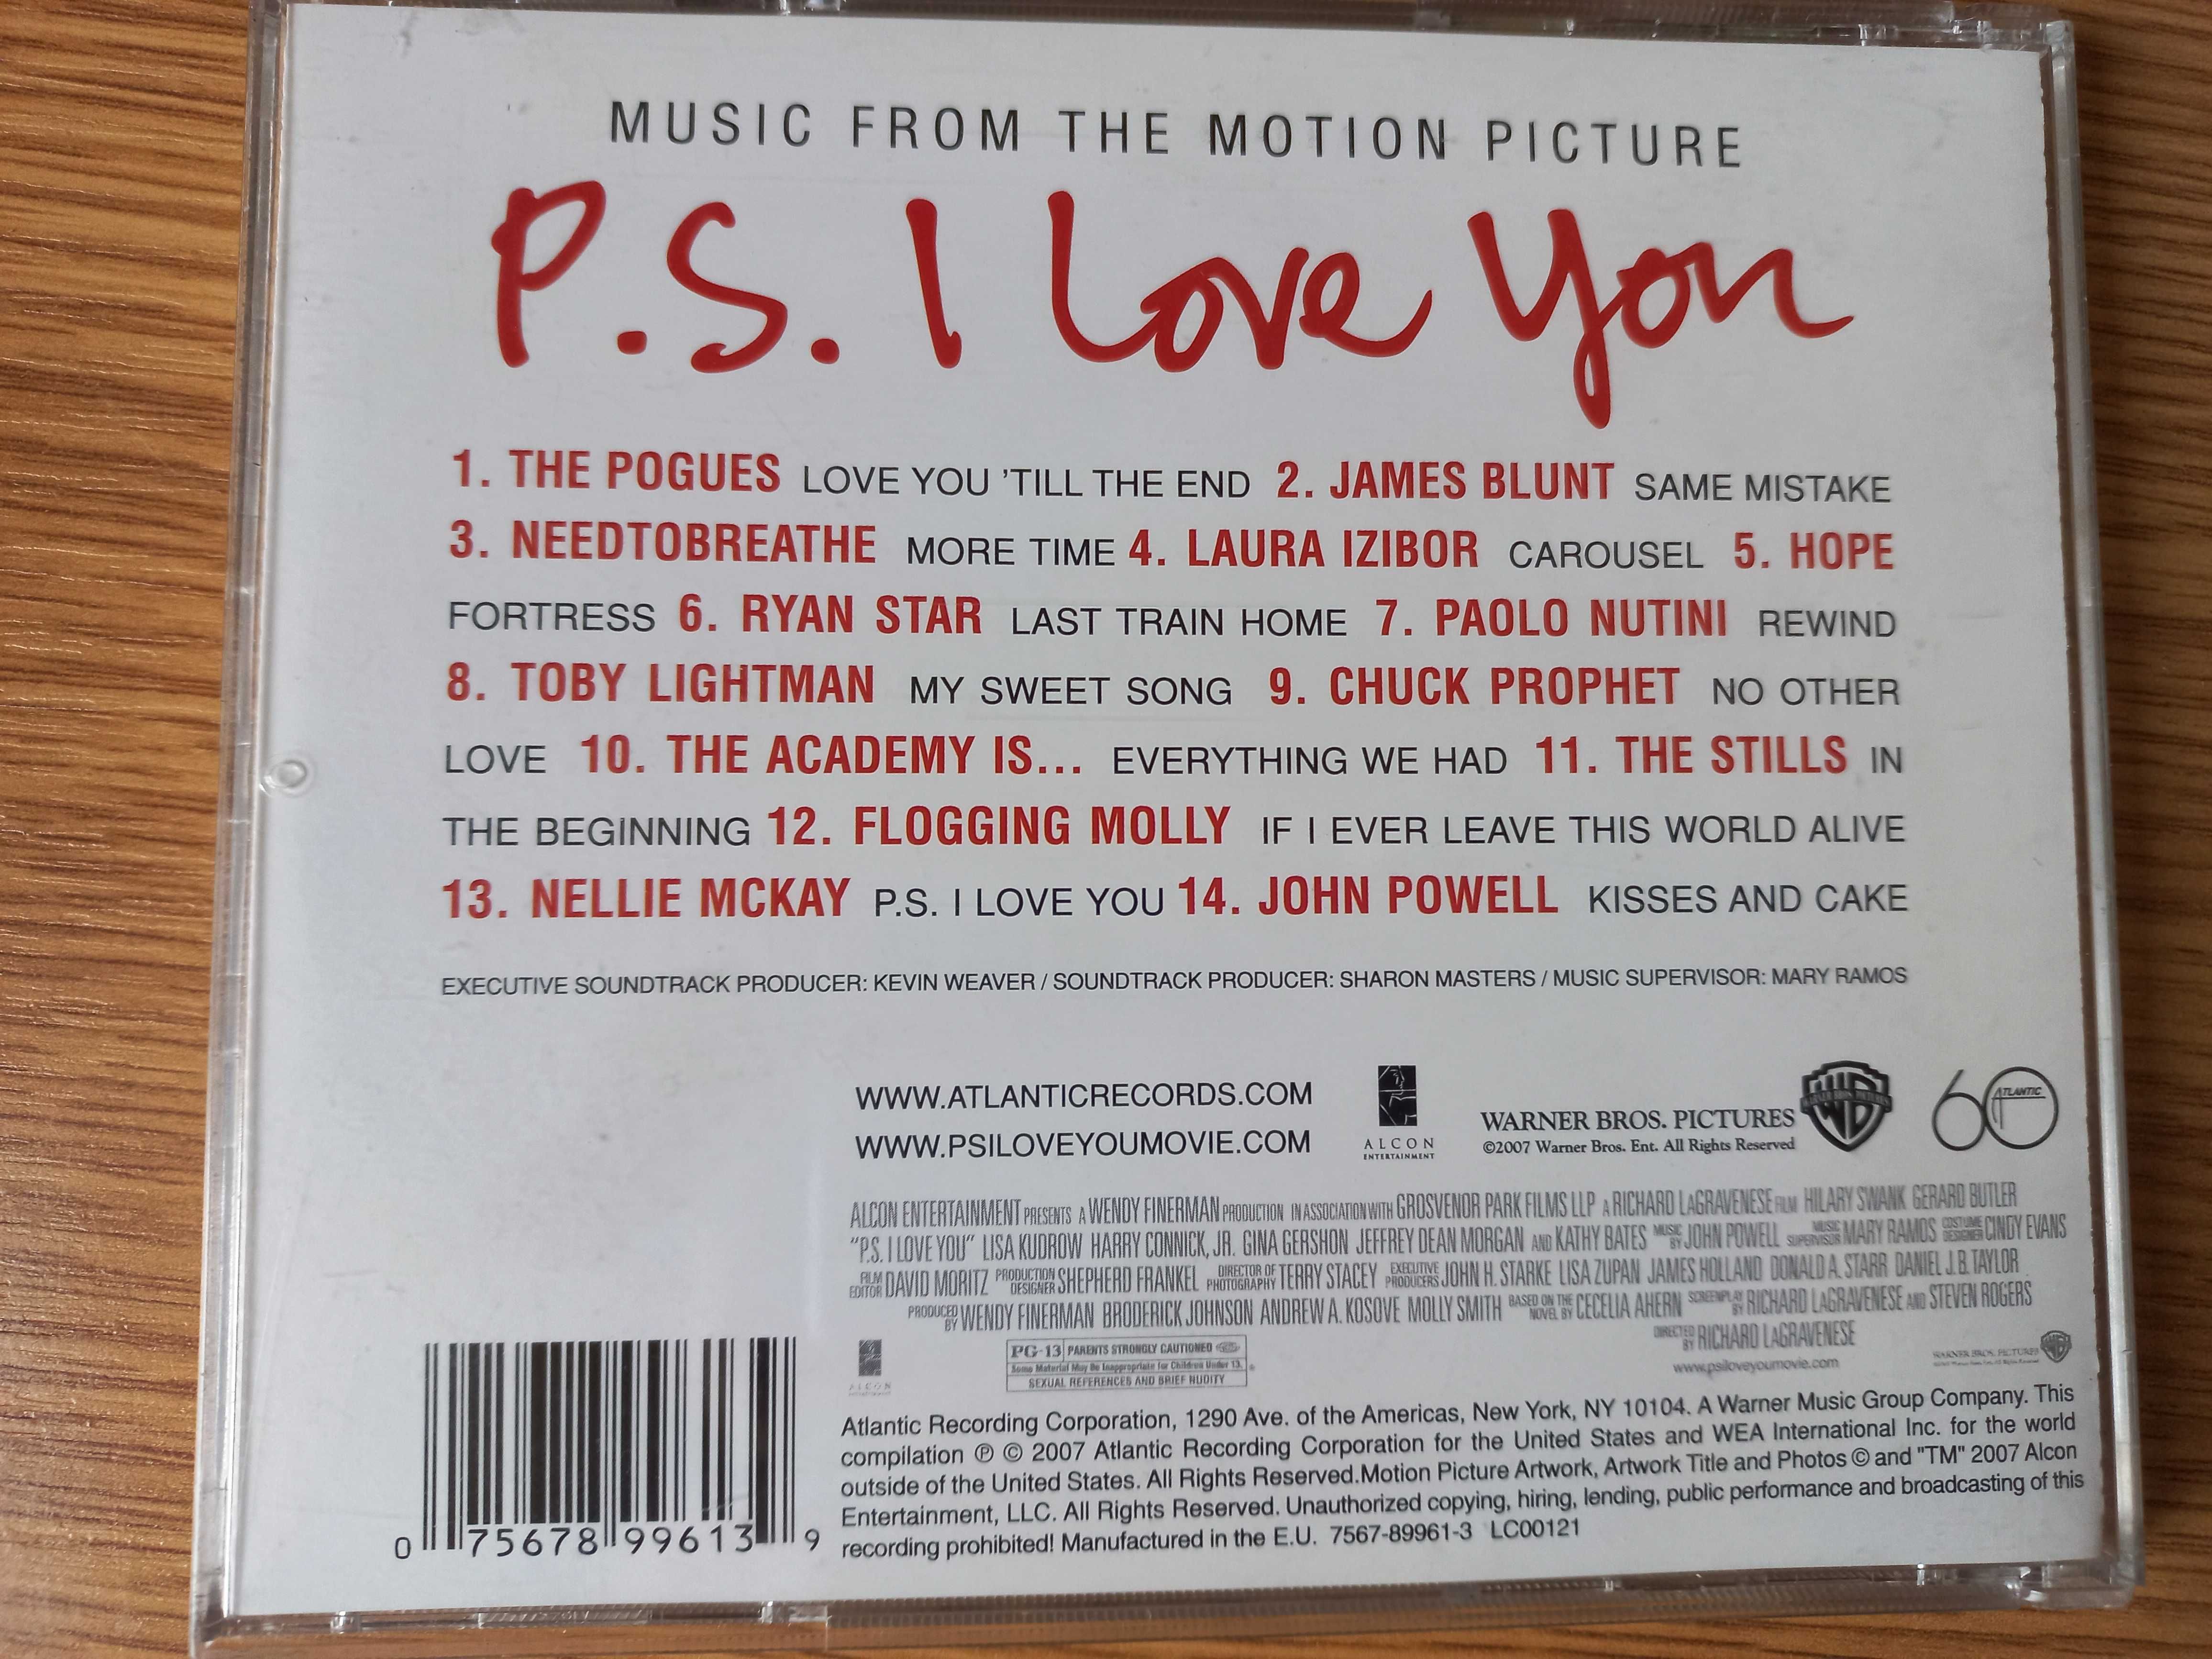 !!! druga płyta CD za 5 zł !!! - muzyka filmowa z "P.S. I love you"